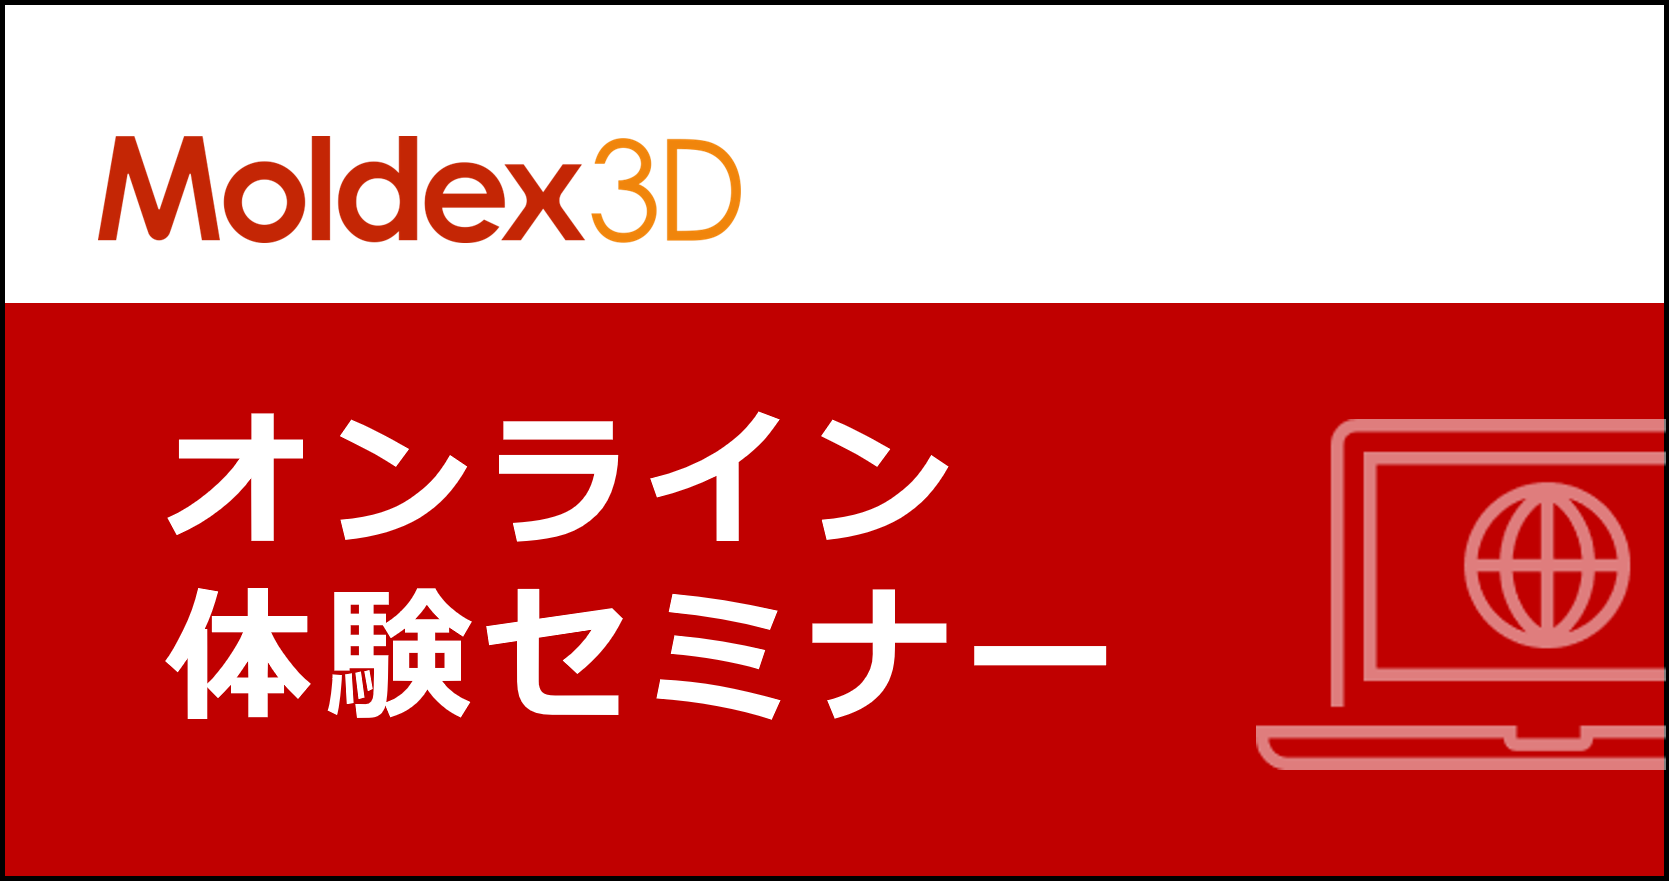 【名古屋】4~6月 Moldex3D/基礎講習